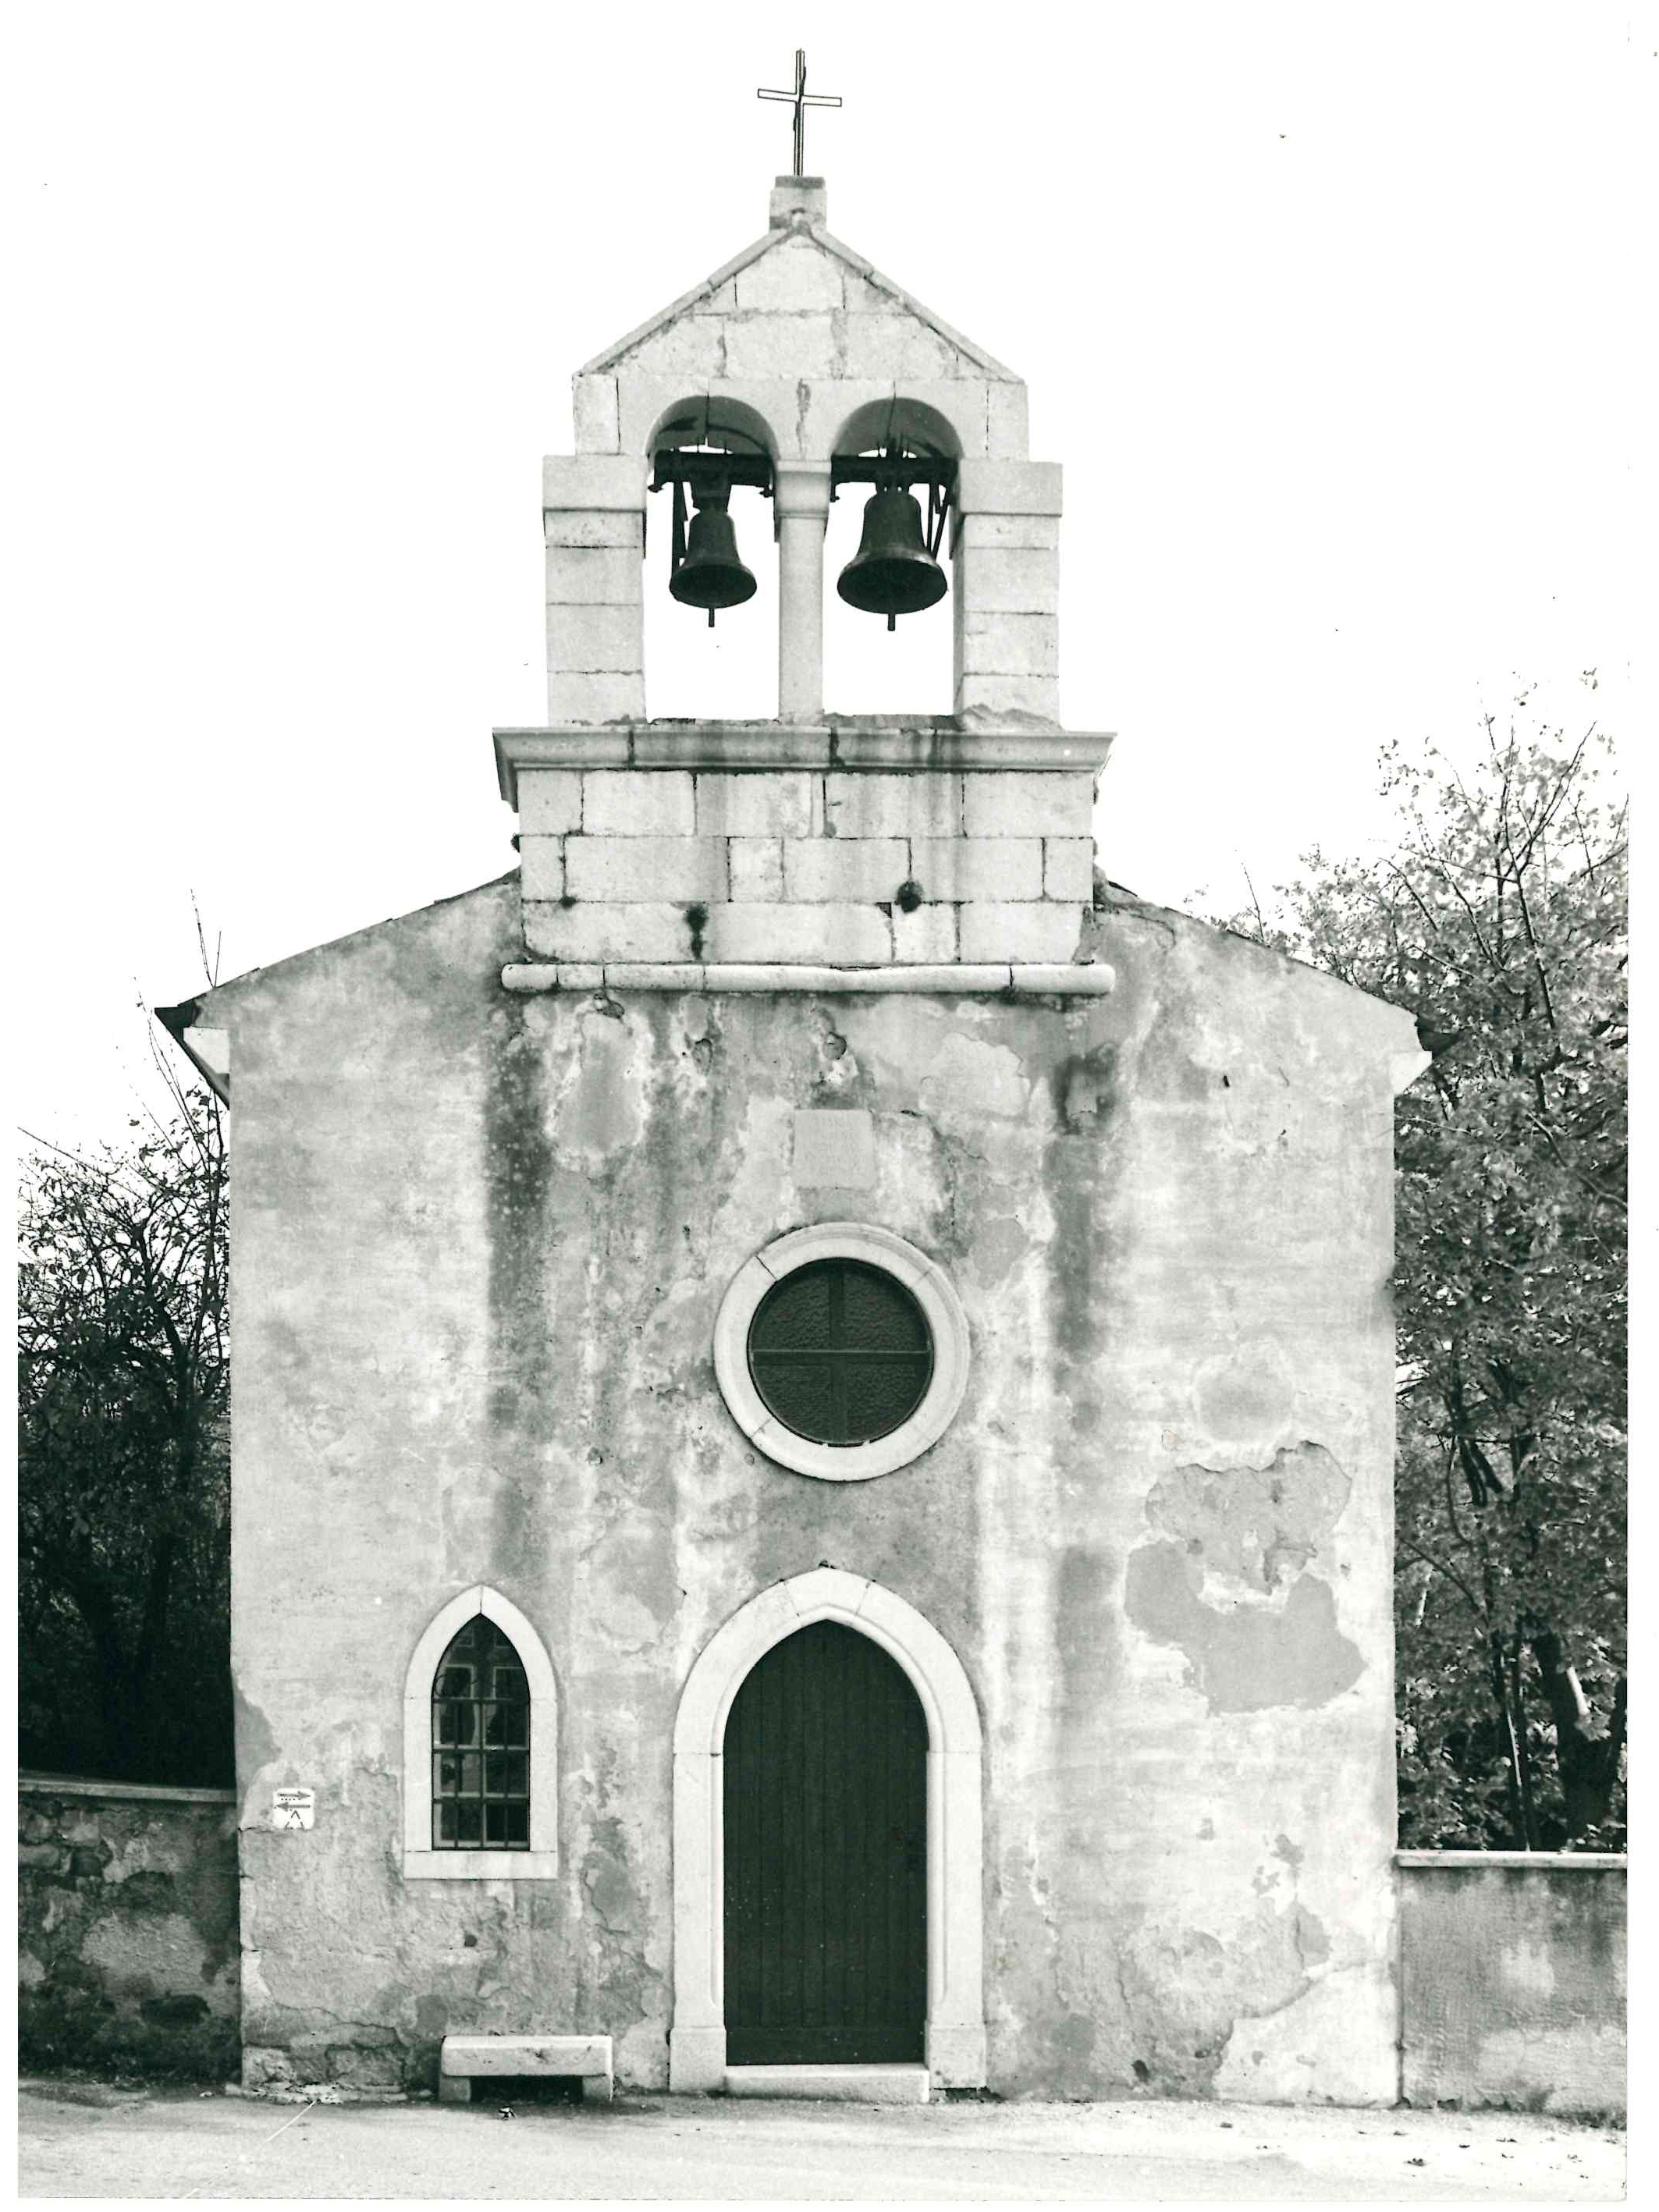 Chiesa filiale di Santa Maria della Salvia (chiesa, filiale) - Trieste (TS) 